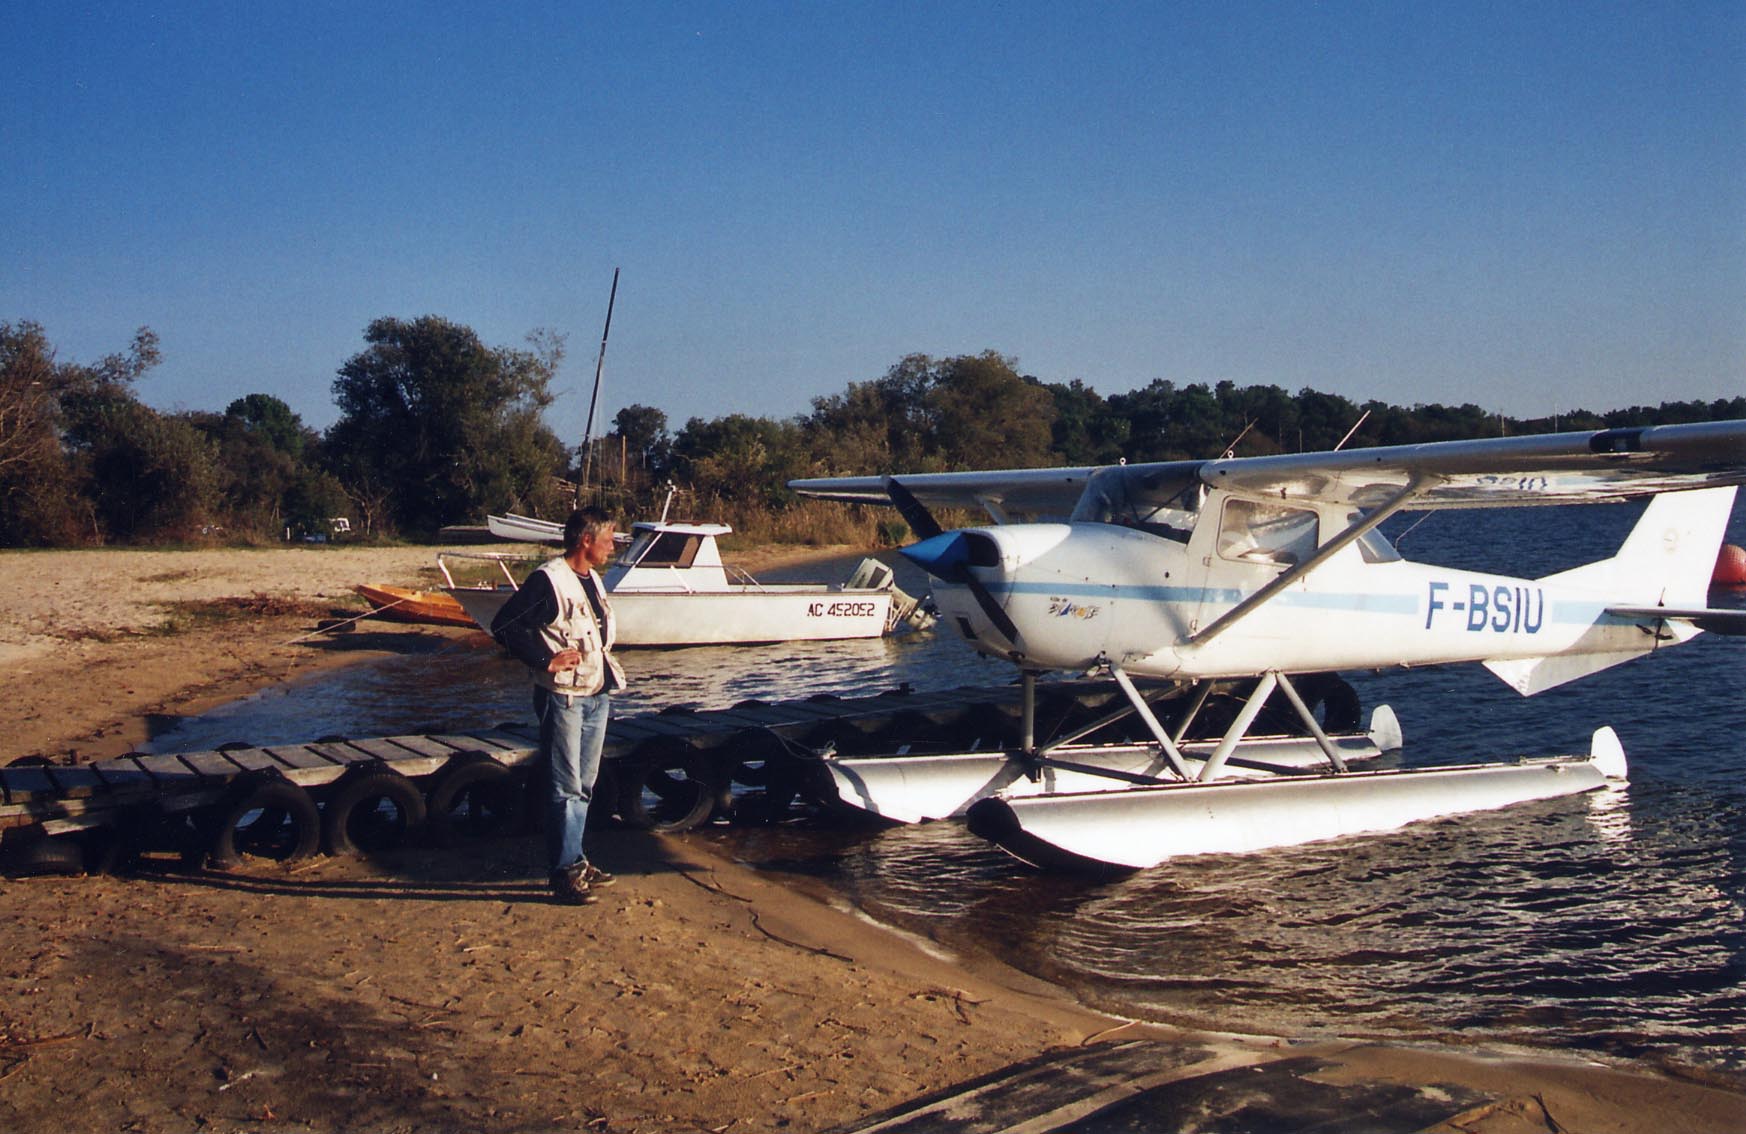 Dans un paysage de Lac - côtes sablées bordées d'arbres méditerranéens, pontons avançant dans l'eau et petits bateaux à quai - Eric contemple son F-BSIU en 2004